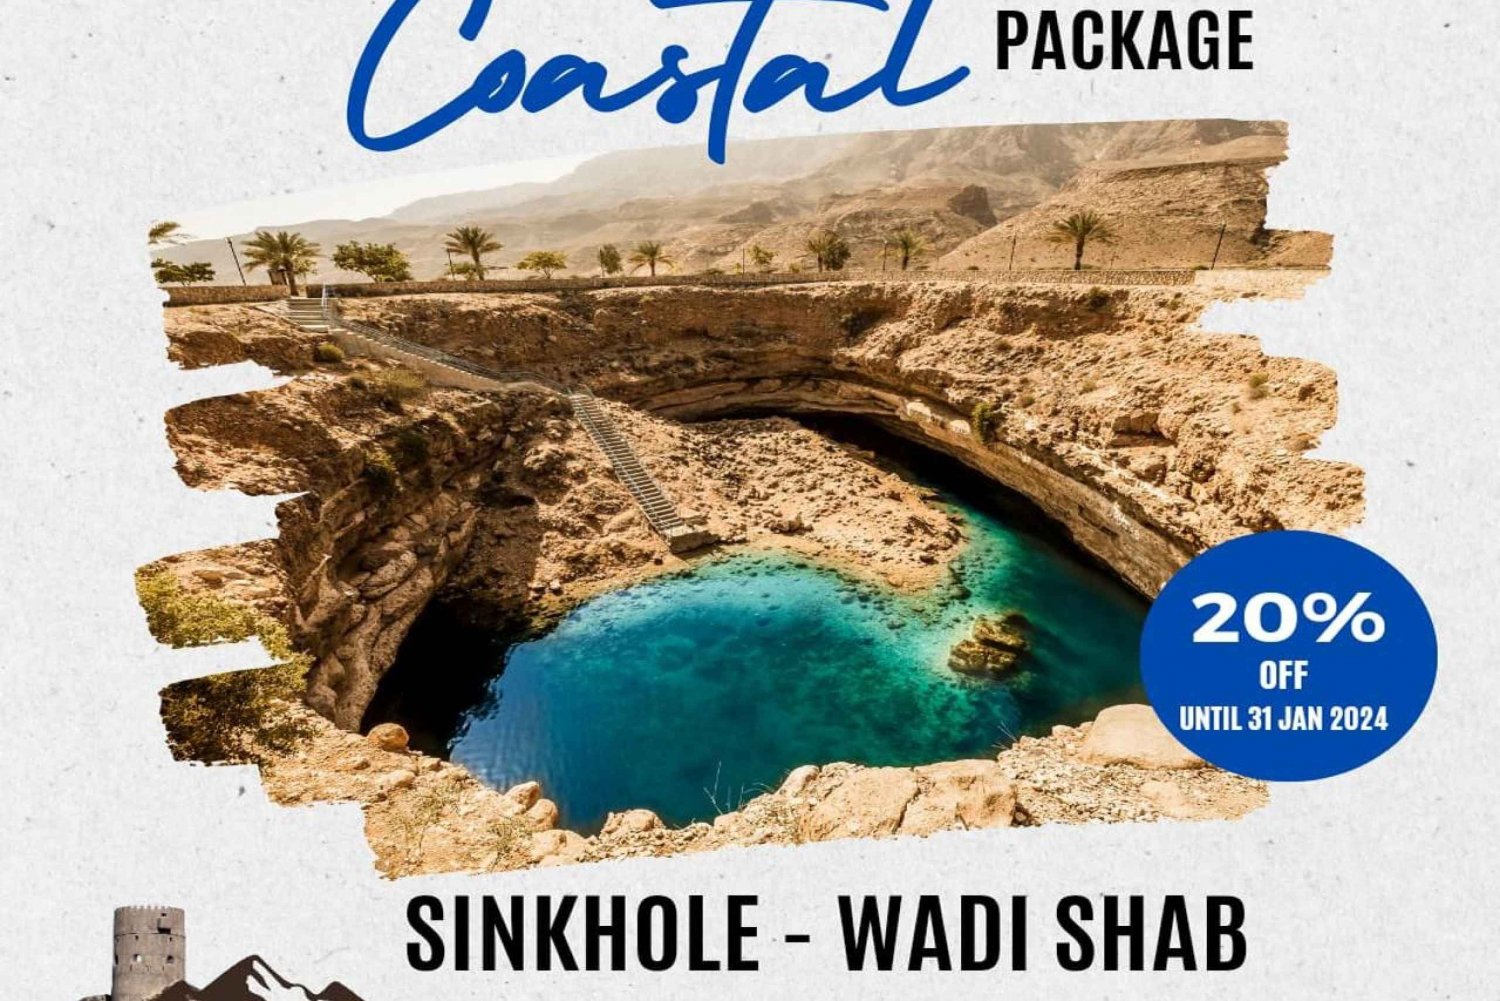 WADI SHAB - SINKHOLE: TOUR DI UN GIORNO CON LE BELLEZZE DELLA COSTA A MUSCAT